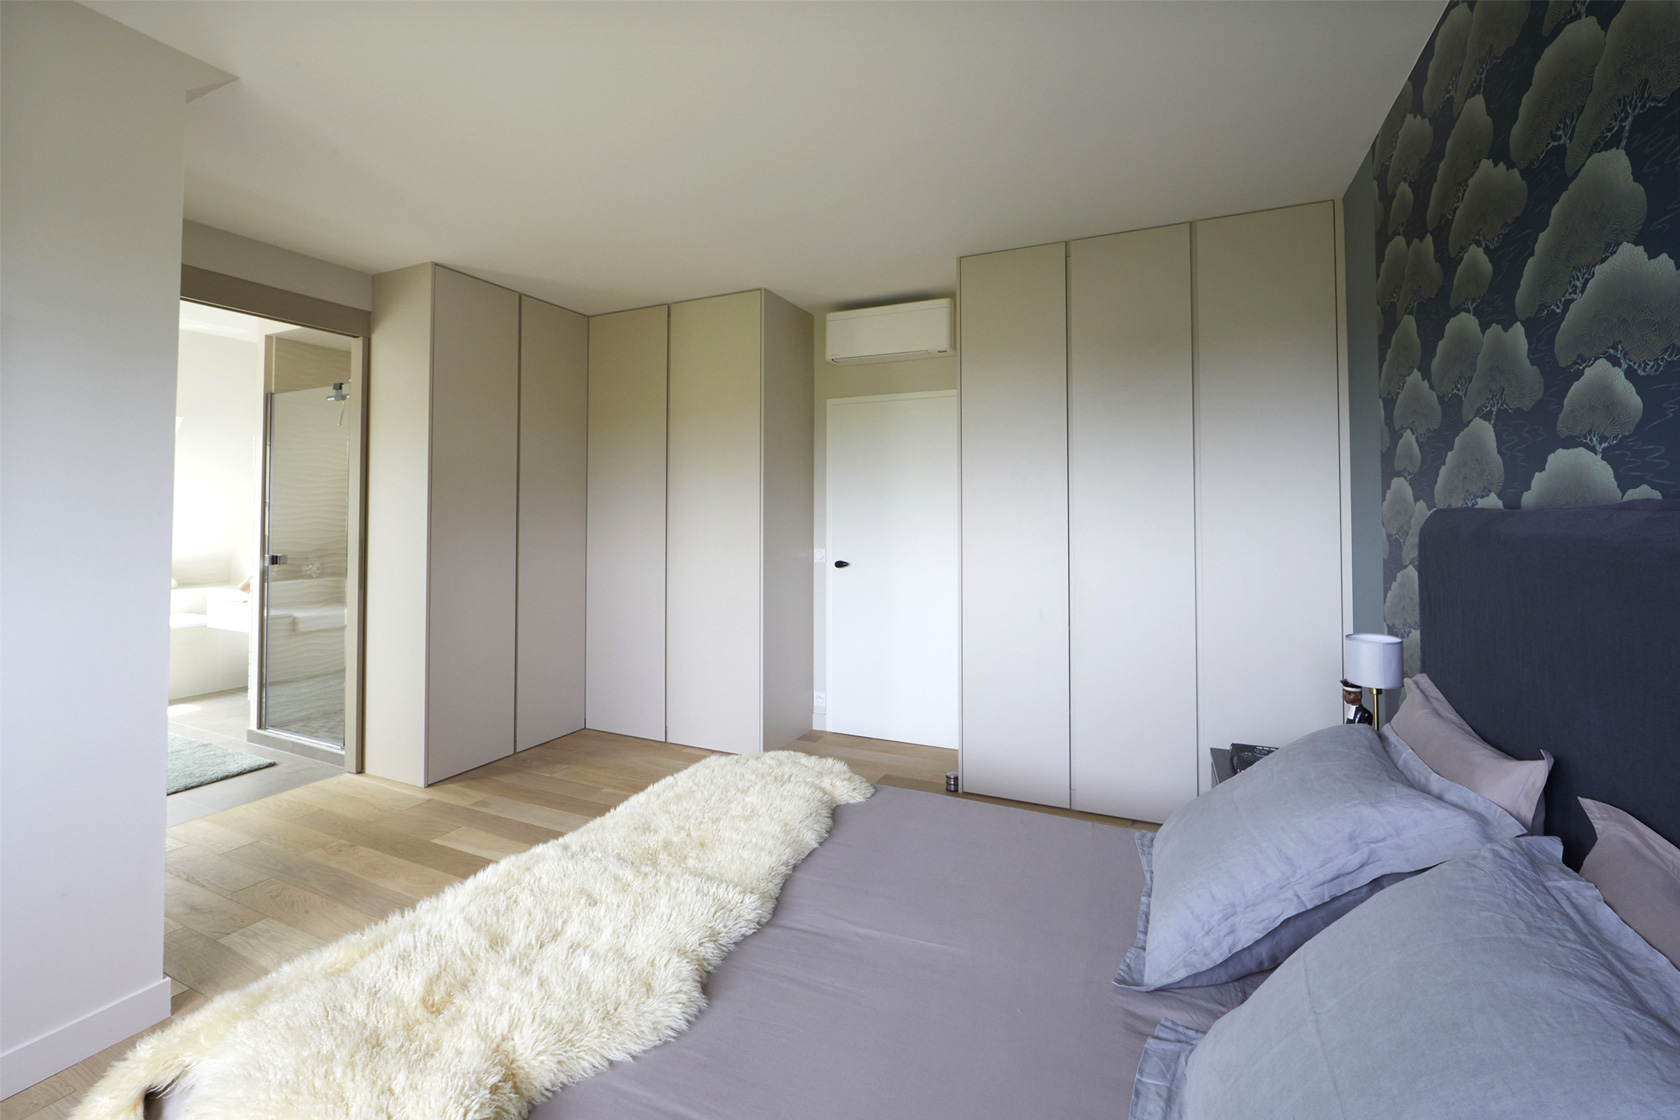 La chambre et son grand dressing sur mesure, par Catherine Lefret, Architecte d'intérieur et Décoratrice dans les Yvelines et Hauts de Seine, 78 92